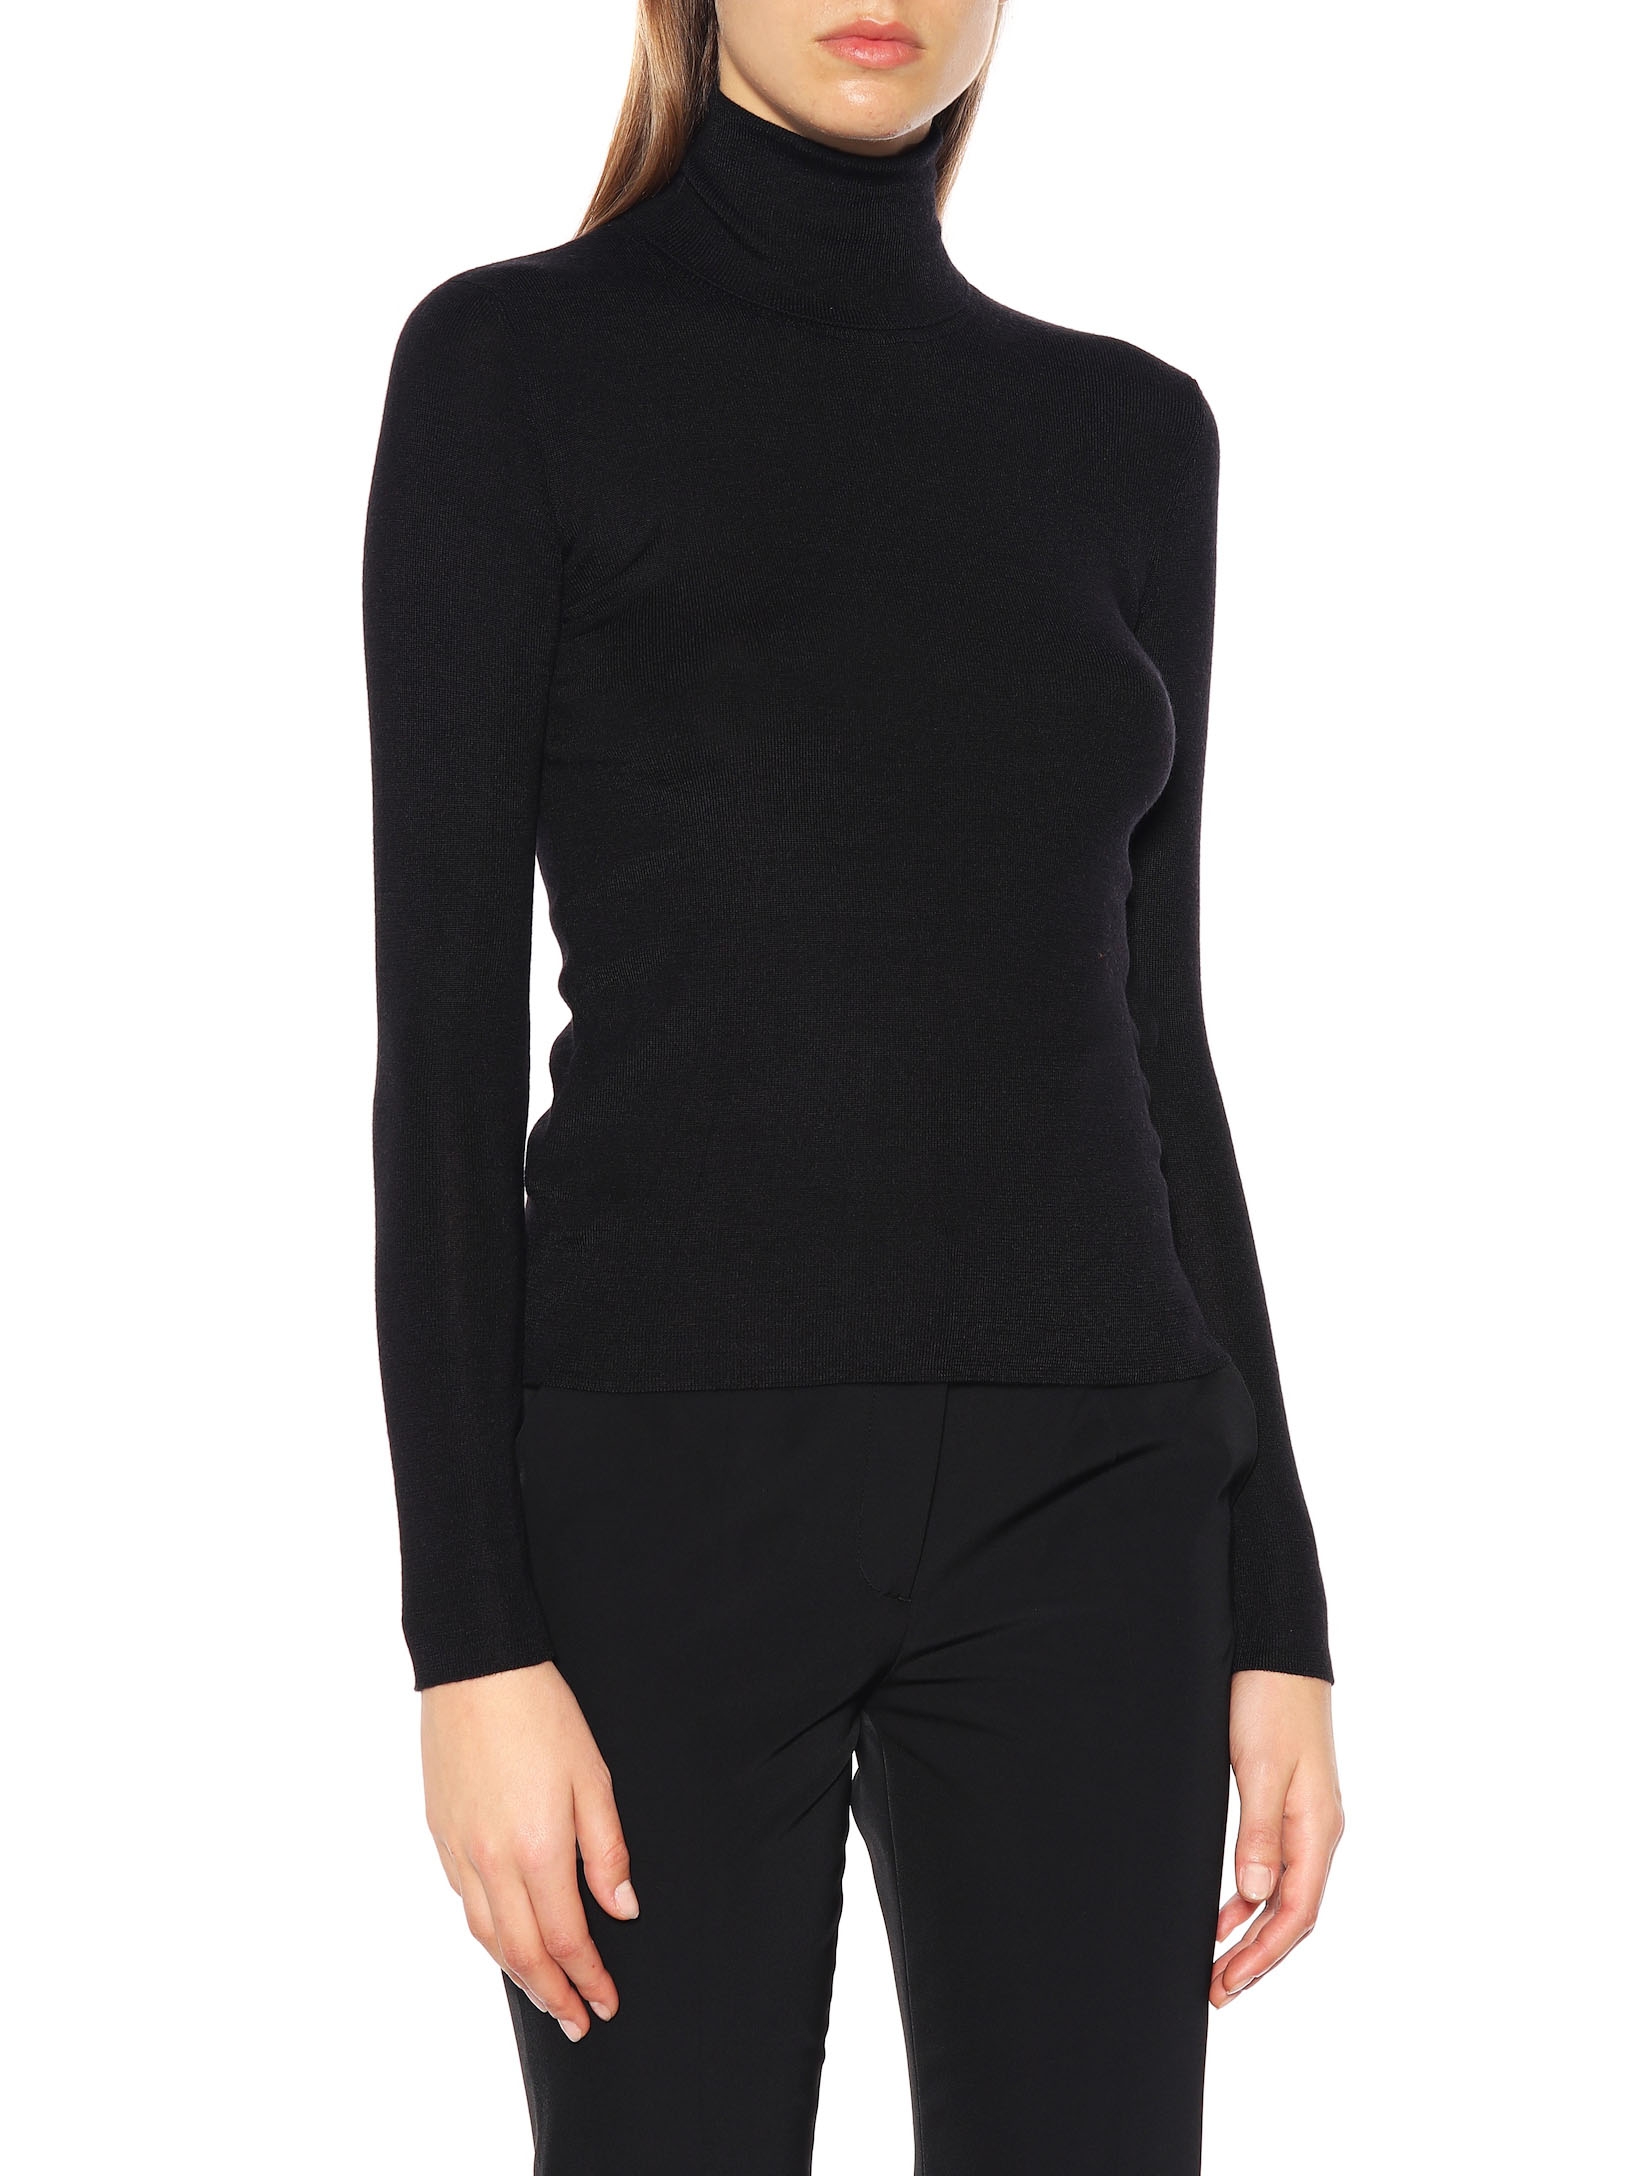 Louise Paris - PRADA Black virgin wool turtleneck sweater Retail price ...